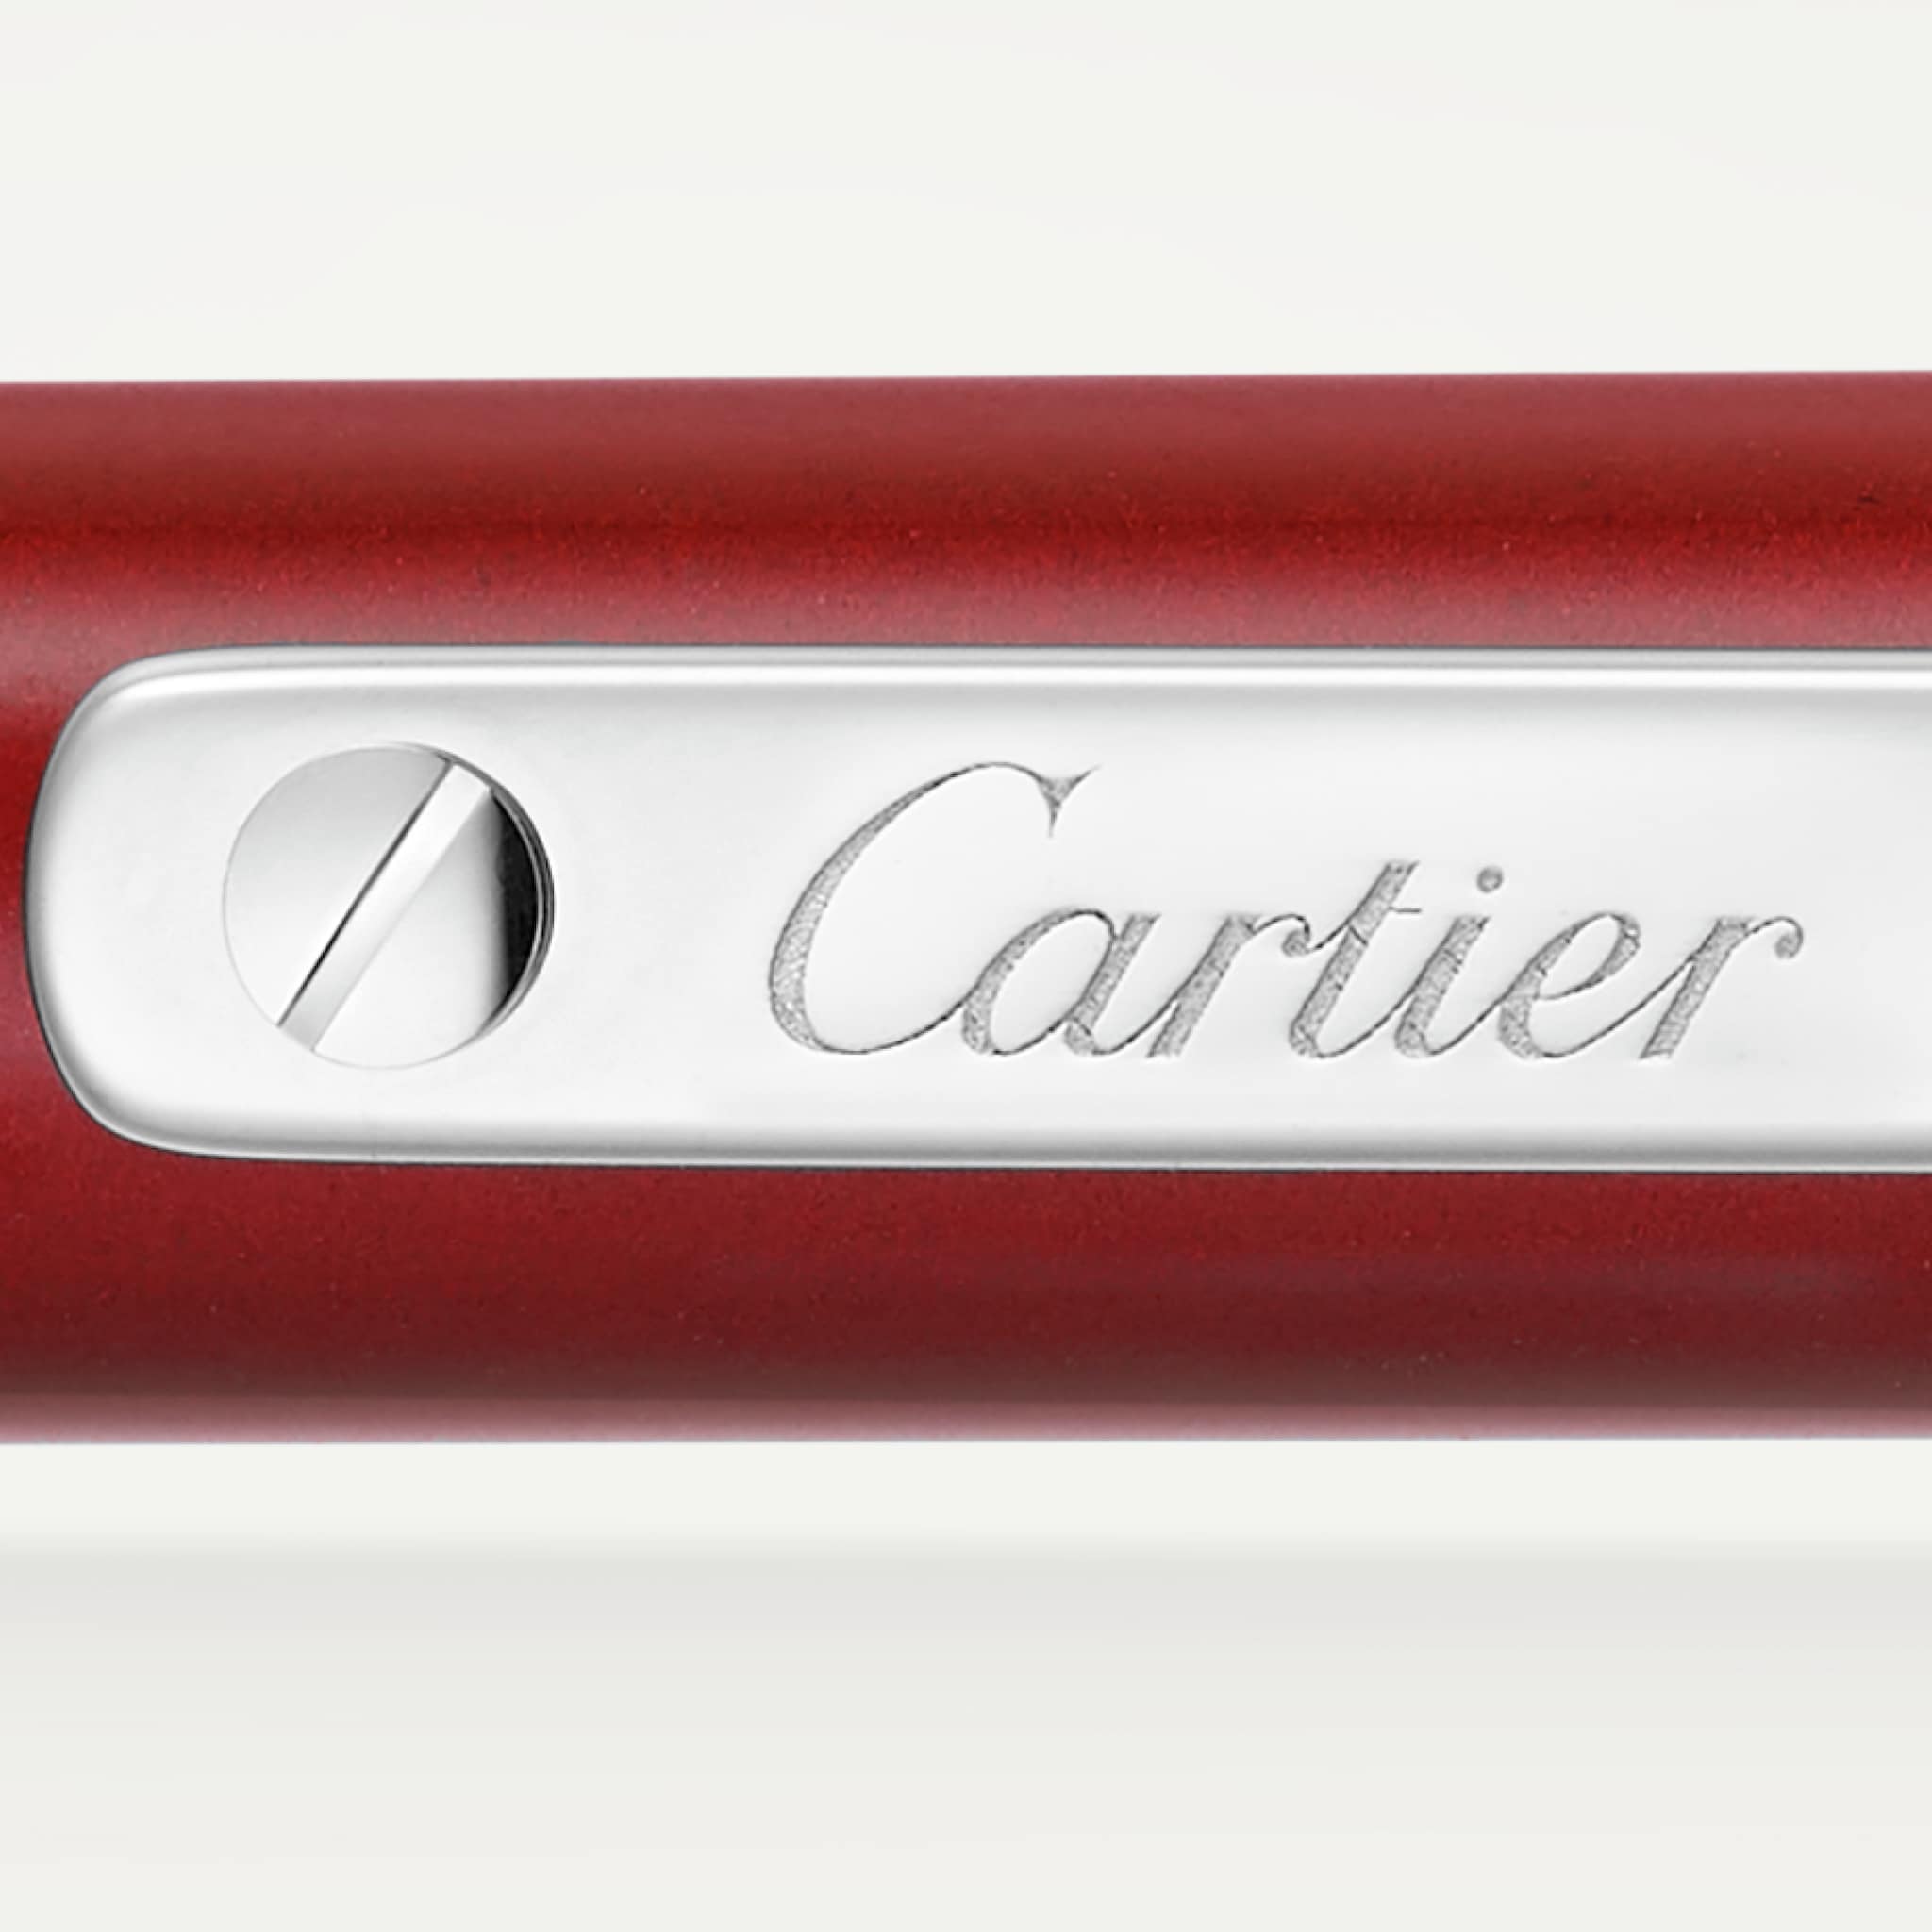 Santos de Cartier 書寫筆小型款，紅色亮漆，鍍鈀飾面